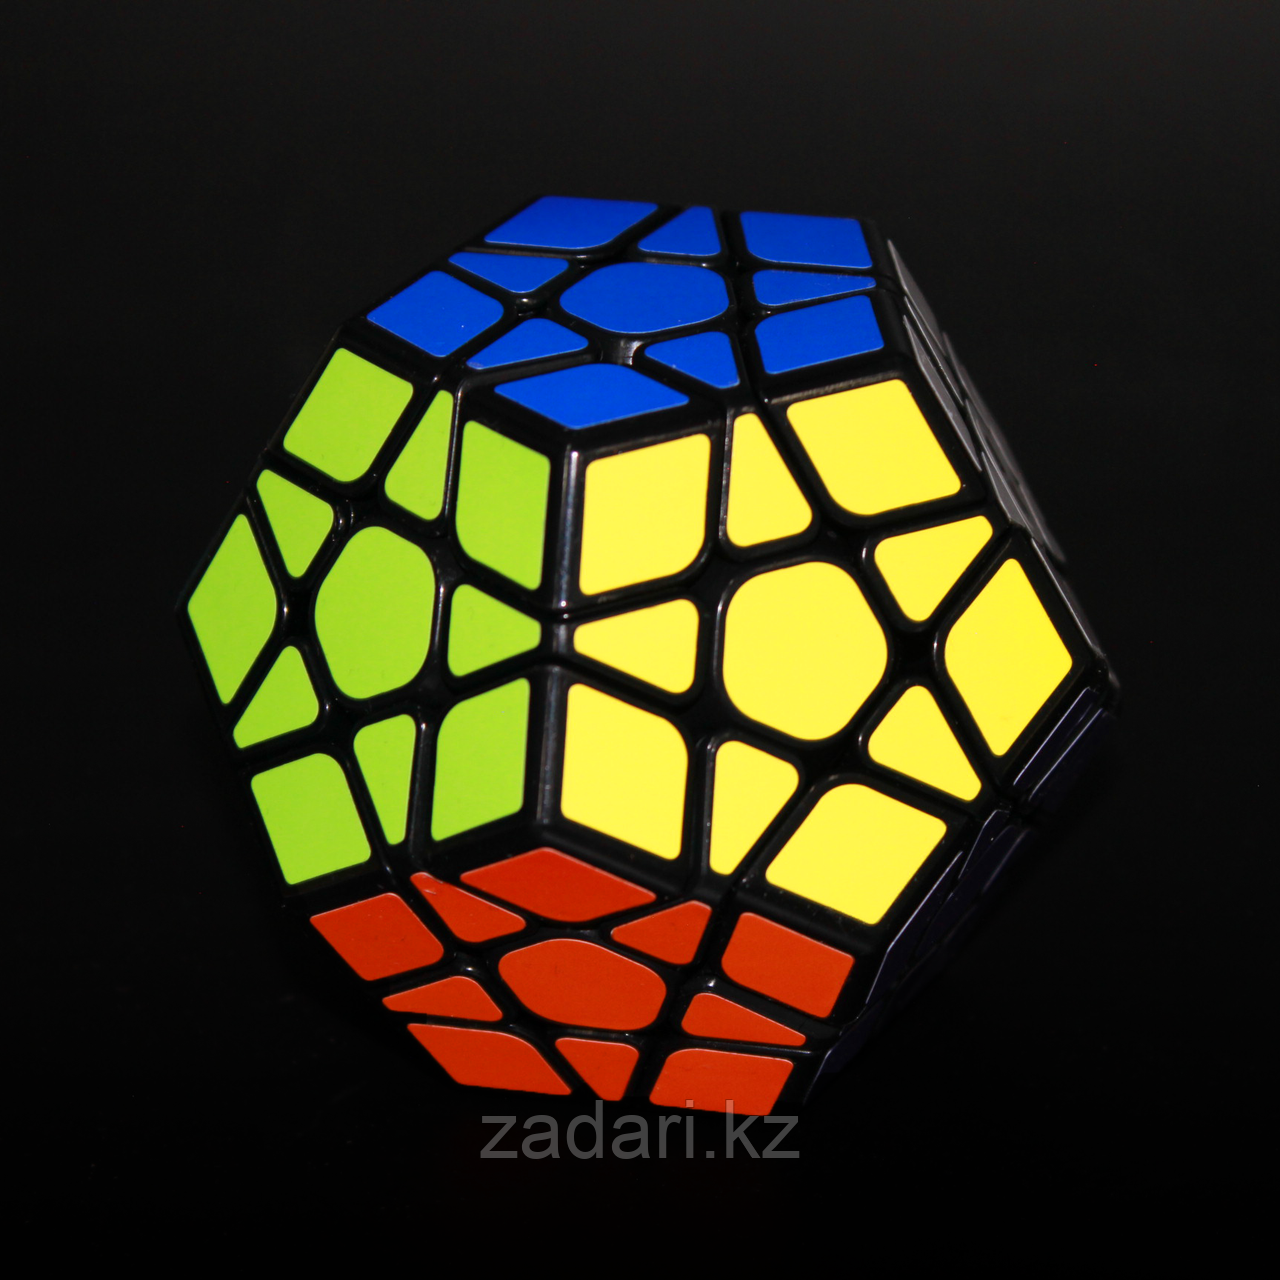 Кубик-Рубика «Мега» с чёрными гранями, фото 1